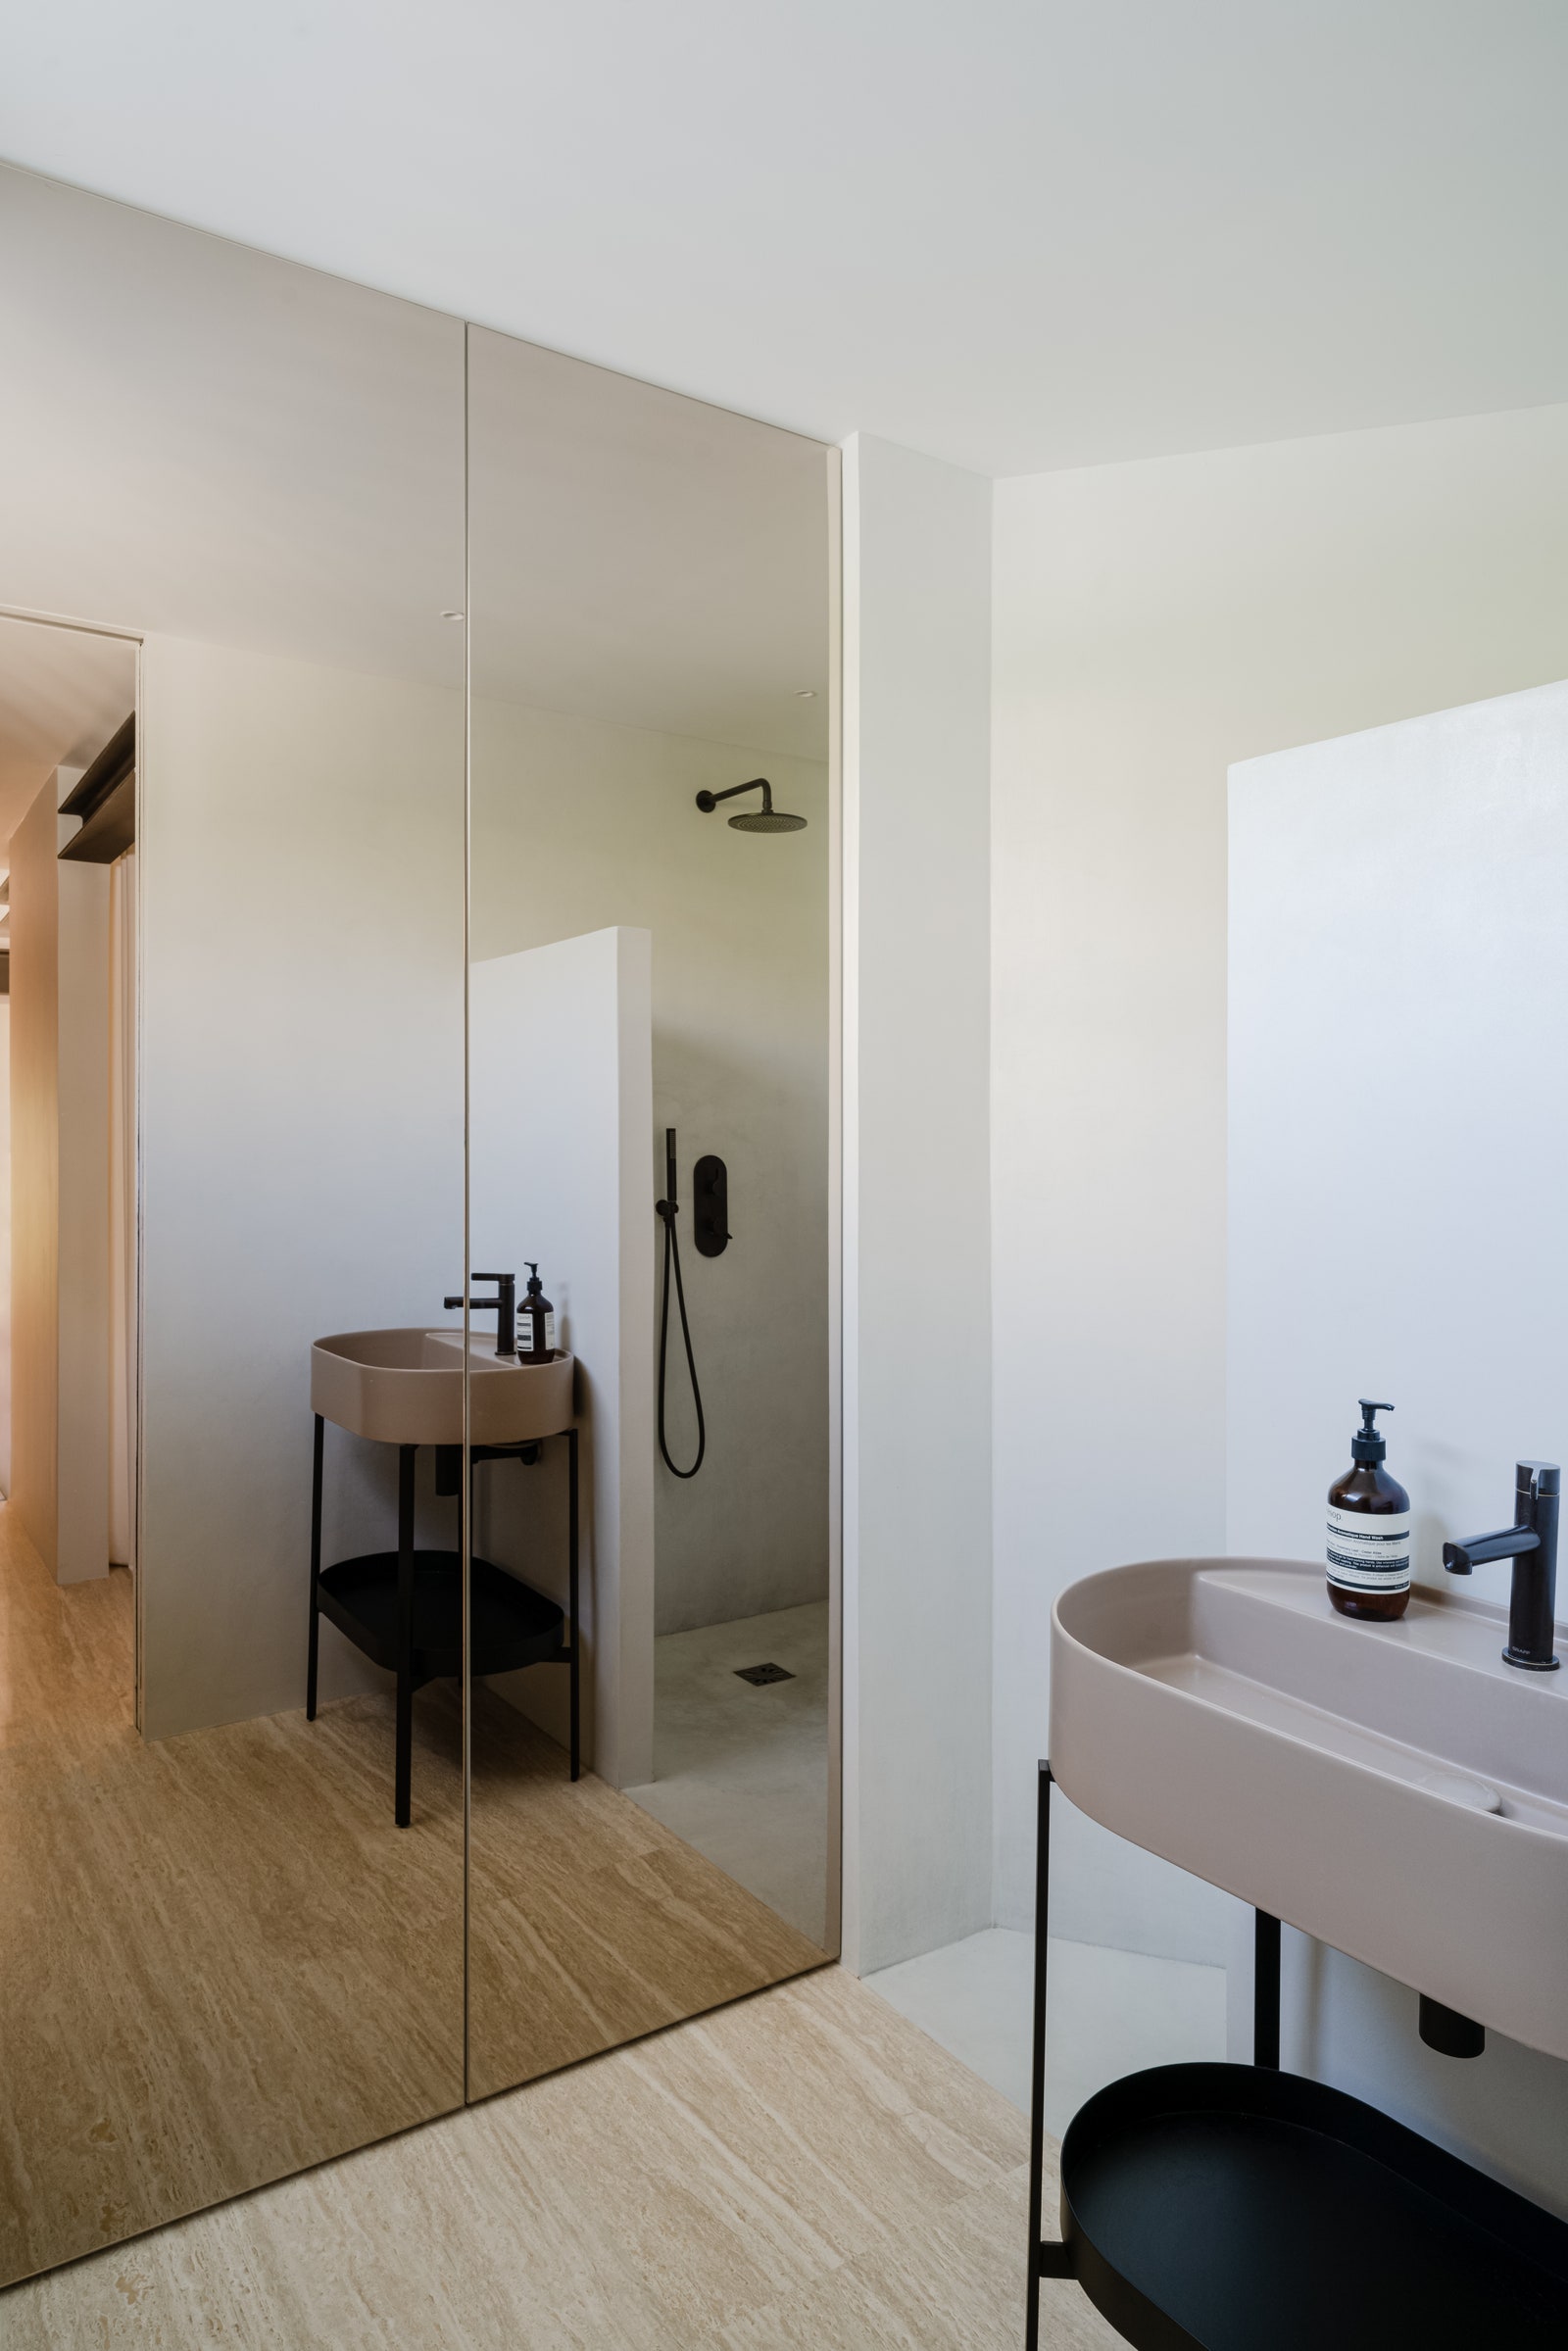 La salle de bain a une simplicité méditerranéenne attrayante. Le sol en travertin est associé à des murs blanchis à la chaux qui. . .